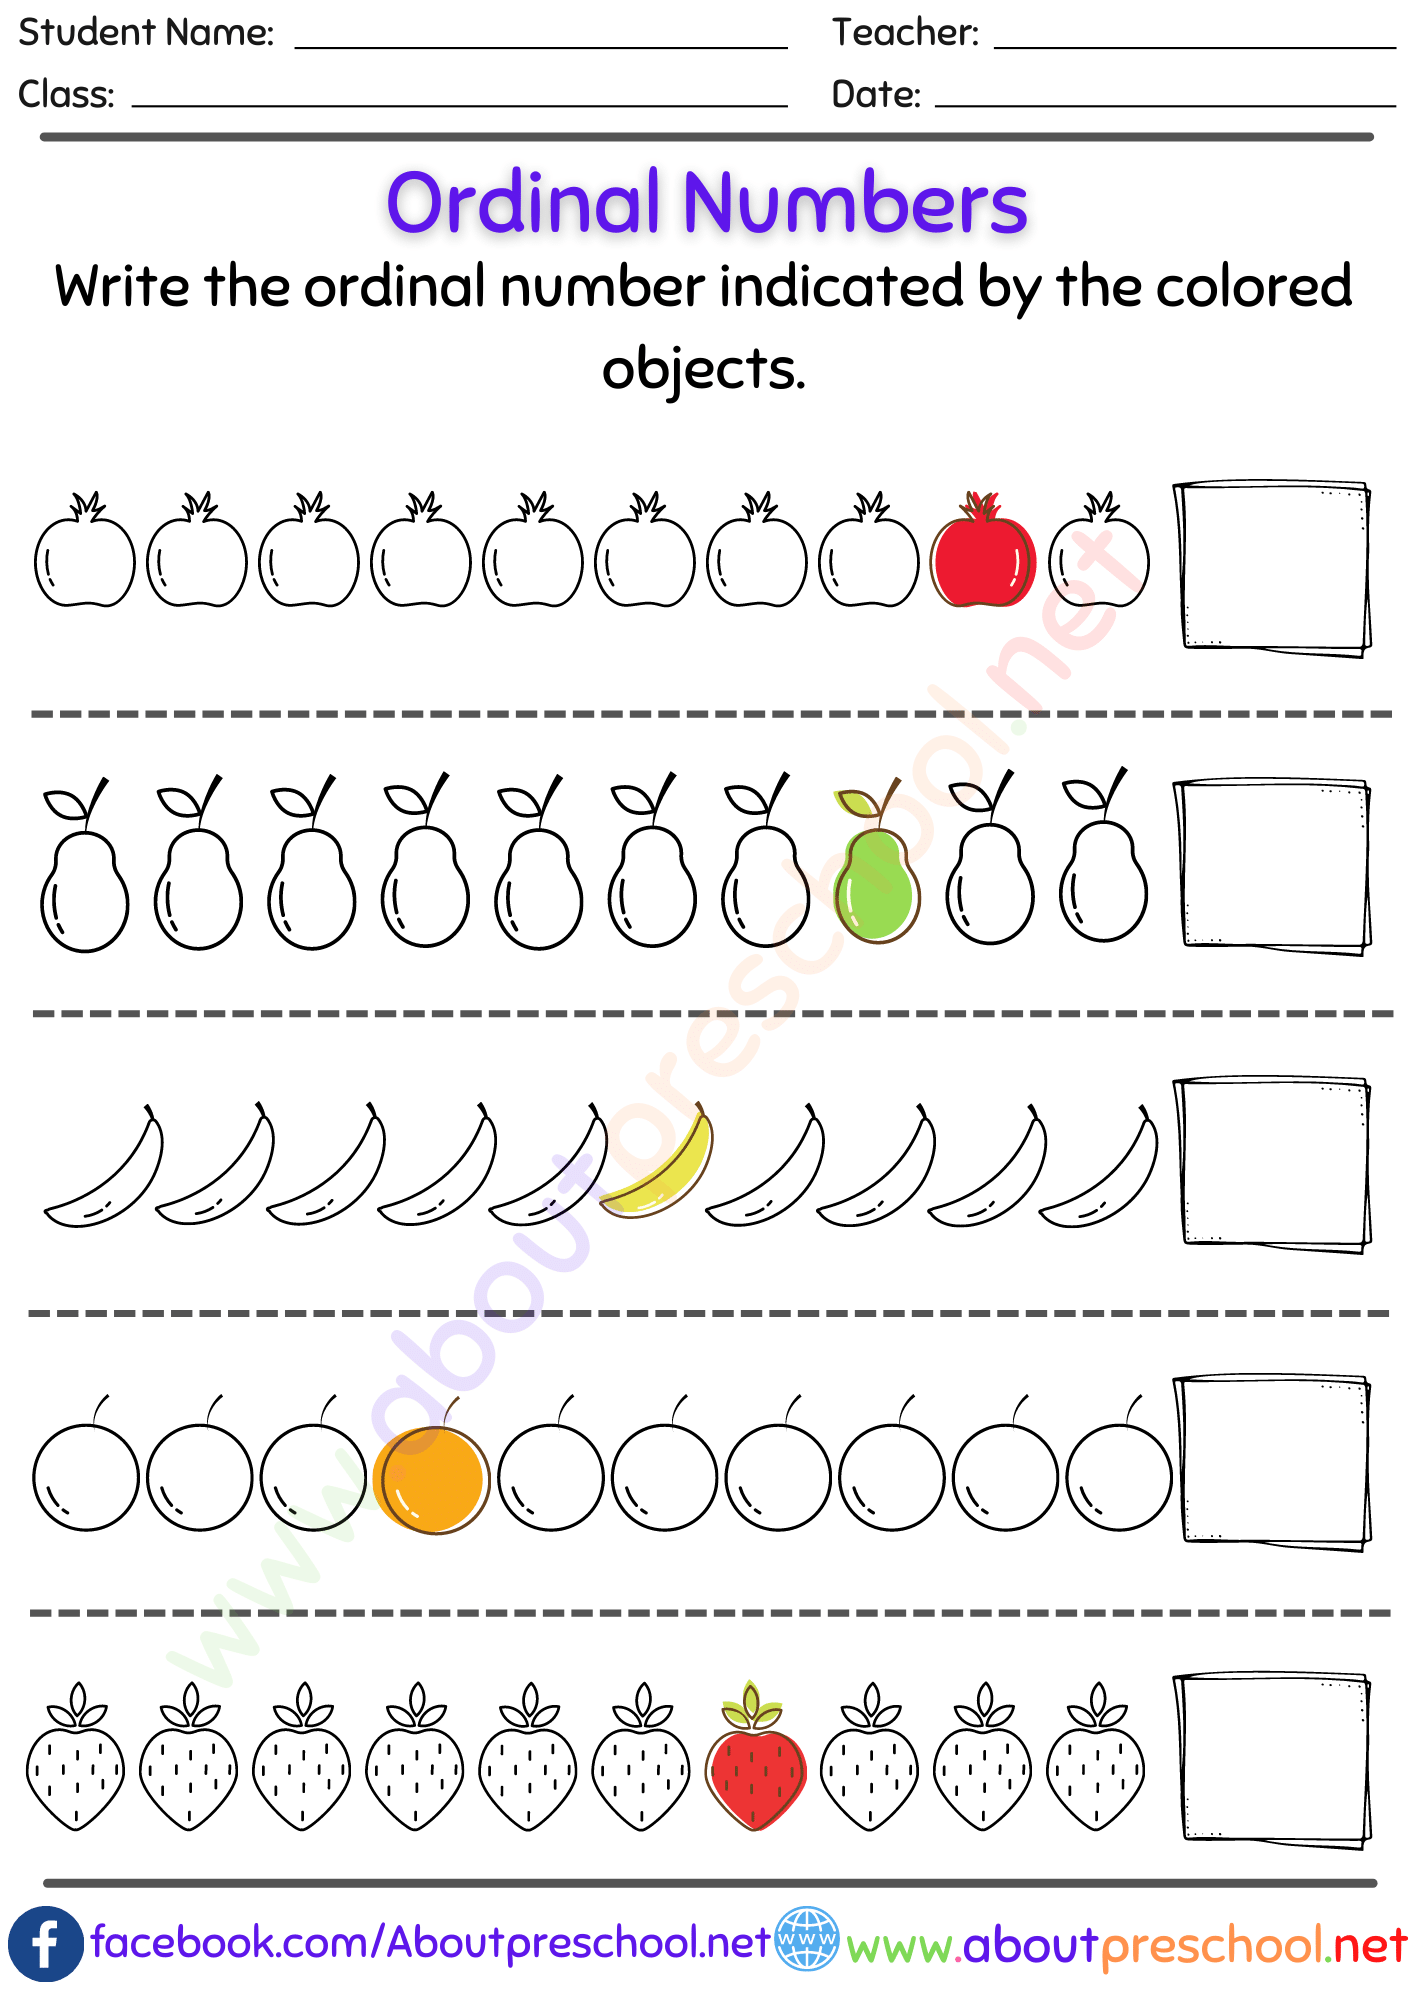 Kindergarten or Grade 1 Ordinal Numbers Worksheet